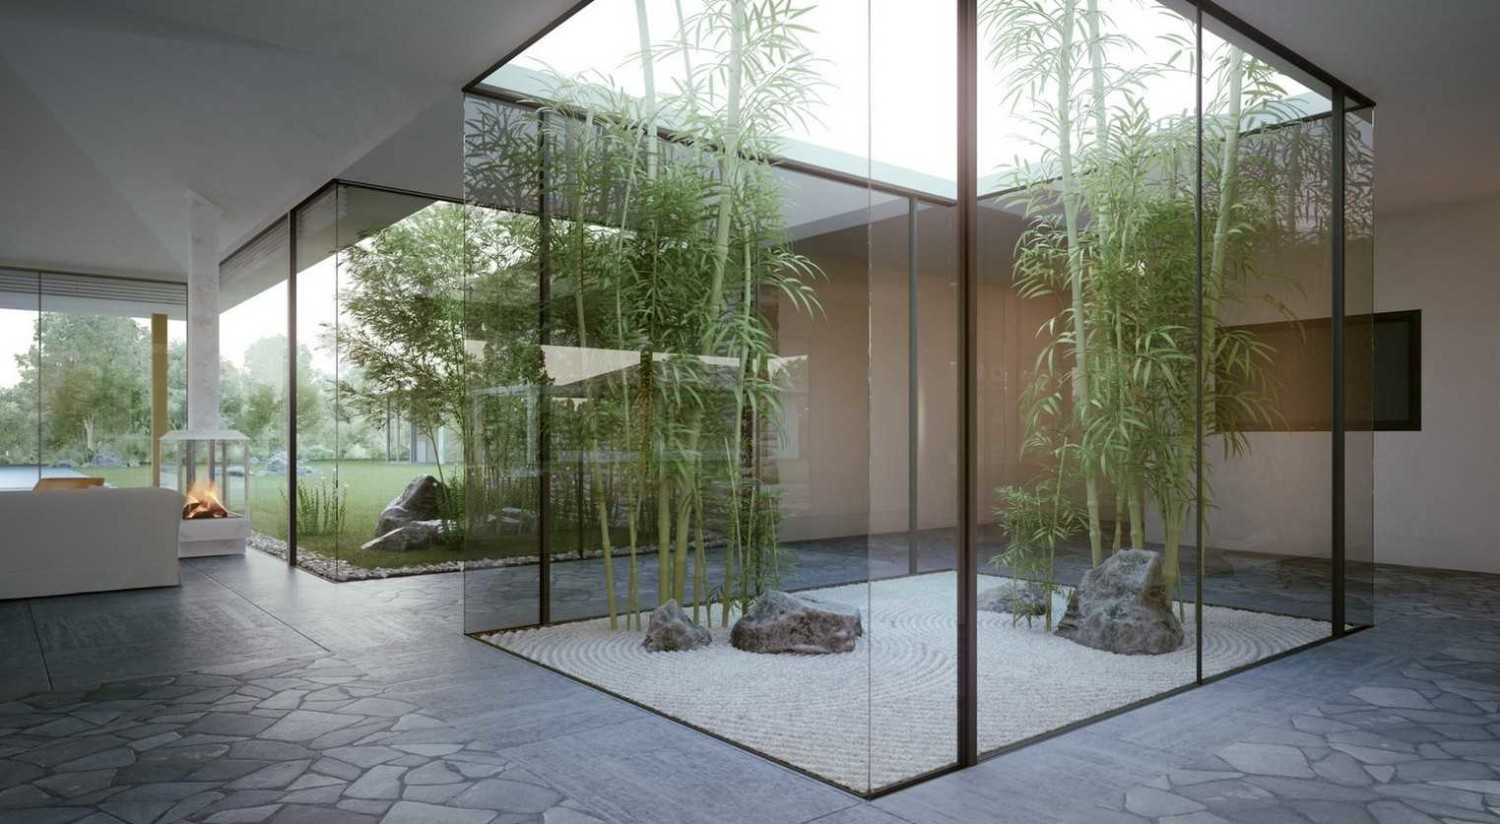 8 Desain Taman Ala Zen Garden Jepang Untuk Rumah Minimalis Anda